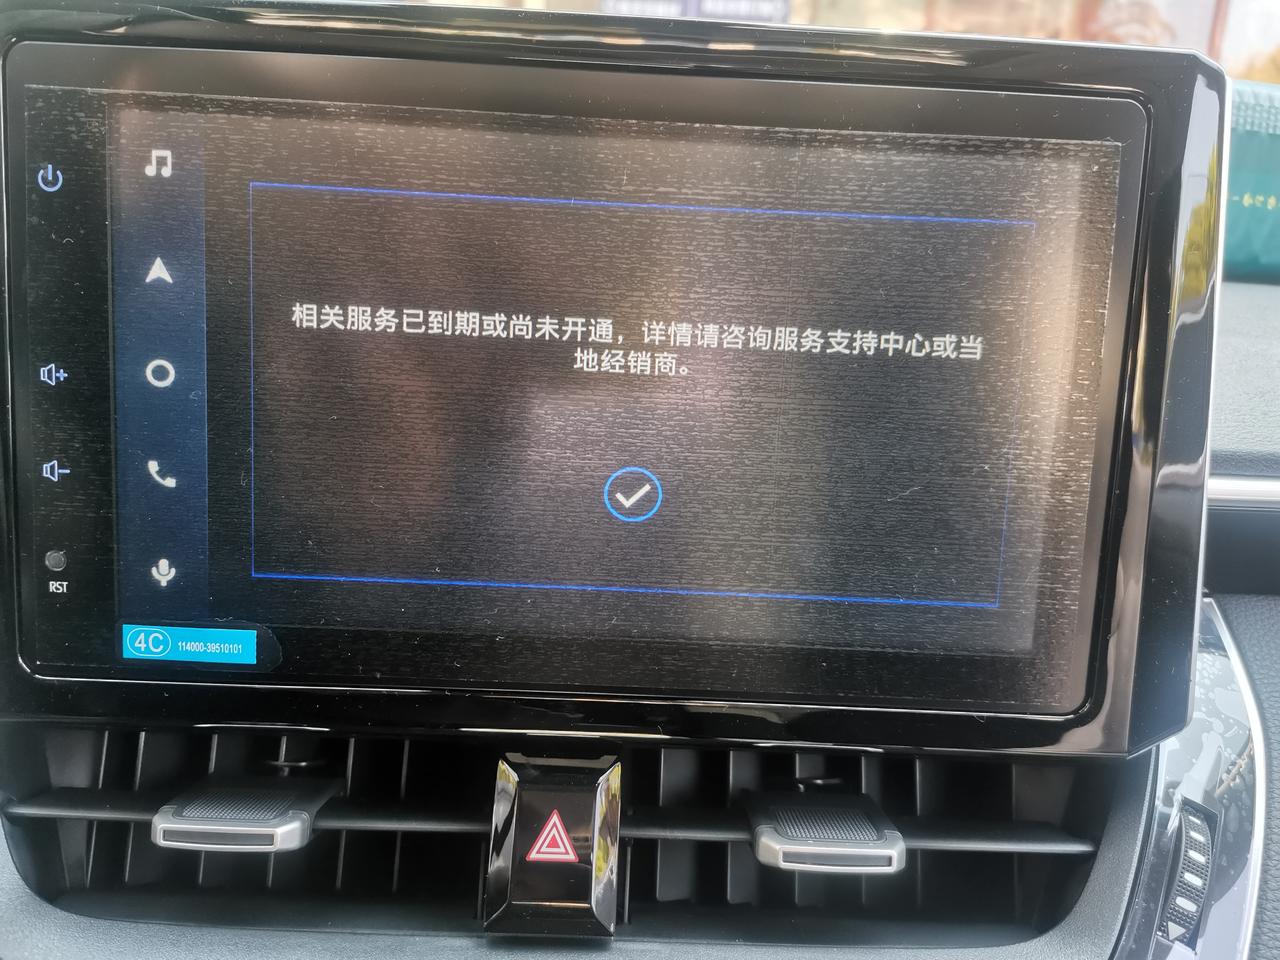 丰田卡罗拉 刚提车中控屏显示相关服务已到期或尚未开通，这个怎么弄？4S店发信息可能在忙吧 ！也没回复。刚提车就发